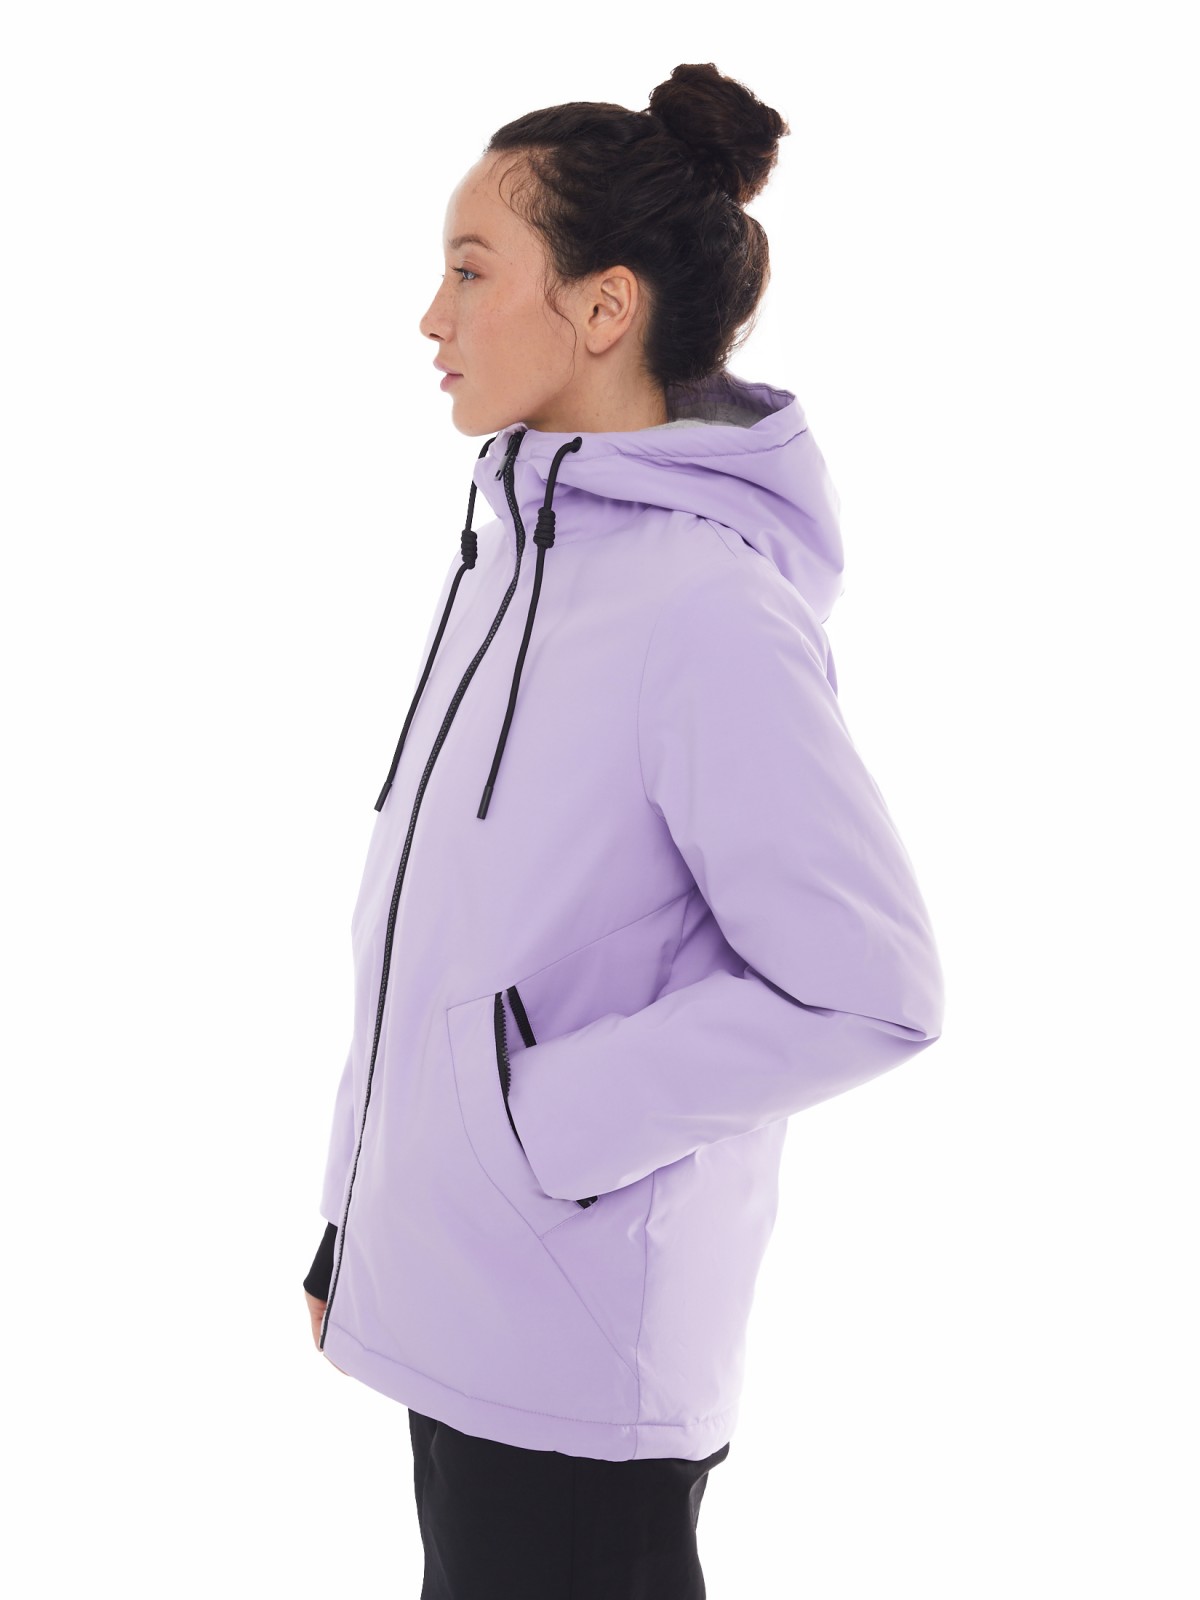 Утеплённая куртка на молнии с капюшоном zolla 024125102144, цвет лиловый, размер XS - фото 3